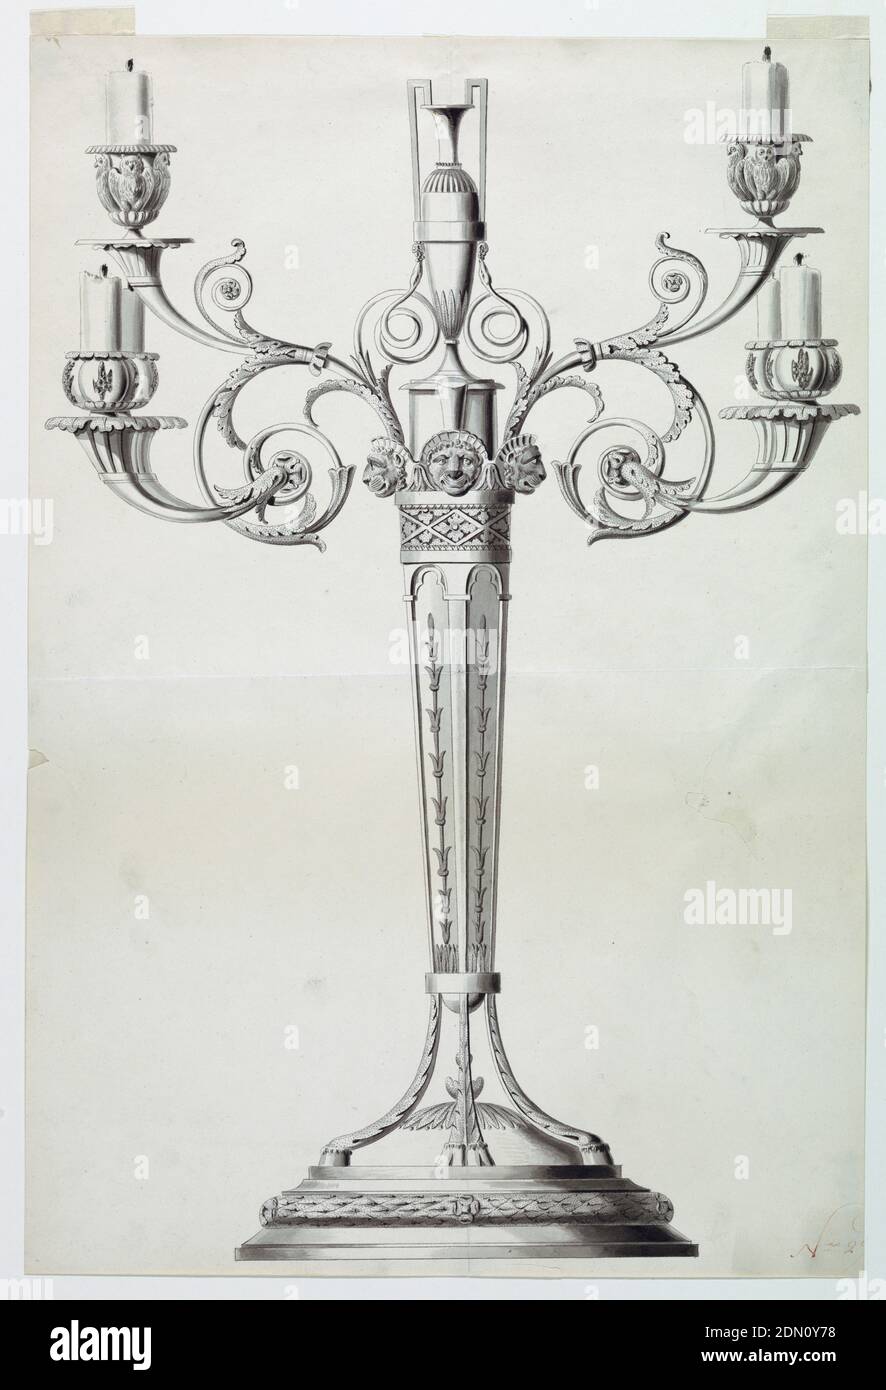 Diseño para un Candelabro, Joseph Anton Seethaler II, alemán, 1799–1868, tinta negra y pluma, cepillo y lavado gris sobre papel, Alemania, 1800, dibujo Foto de stock